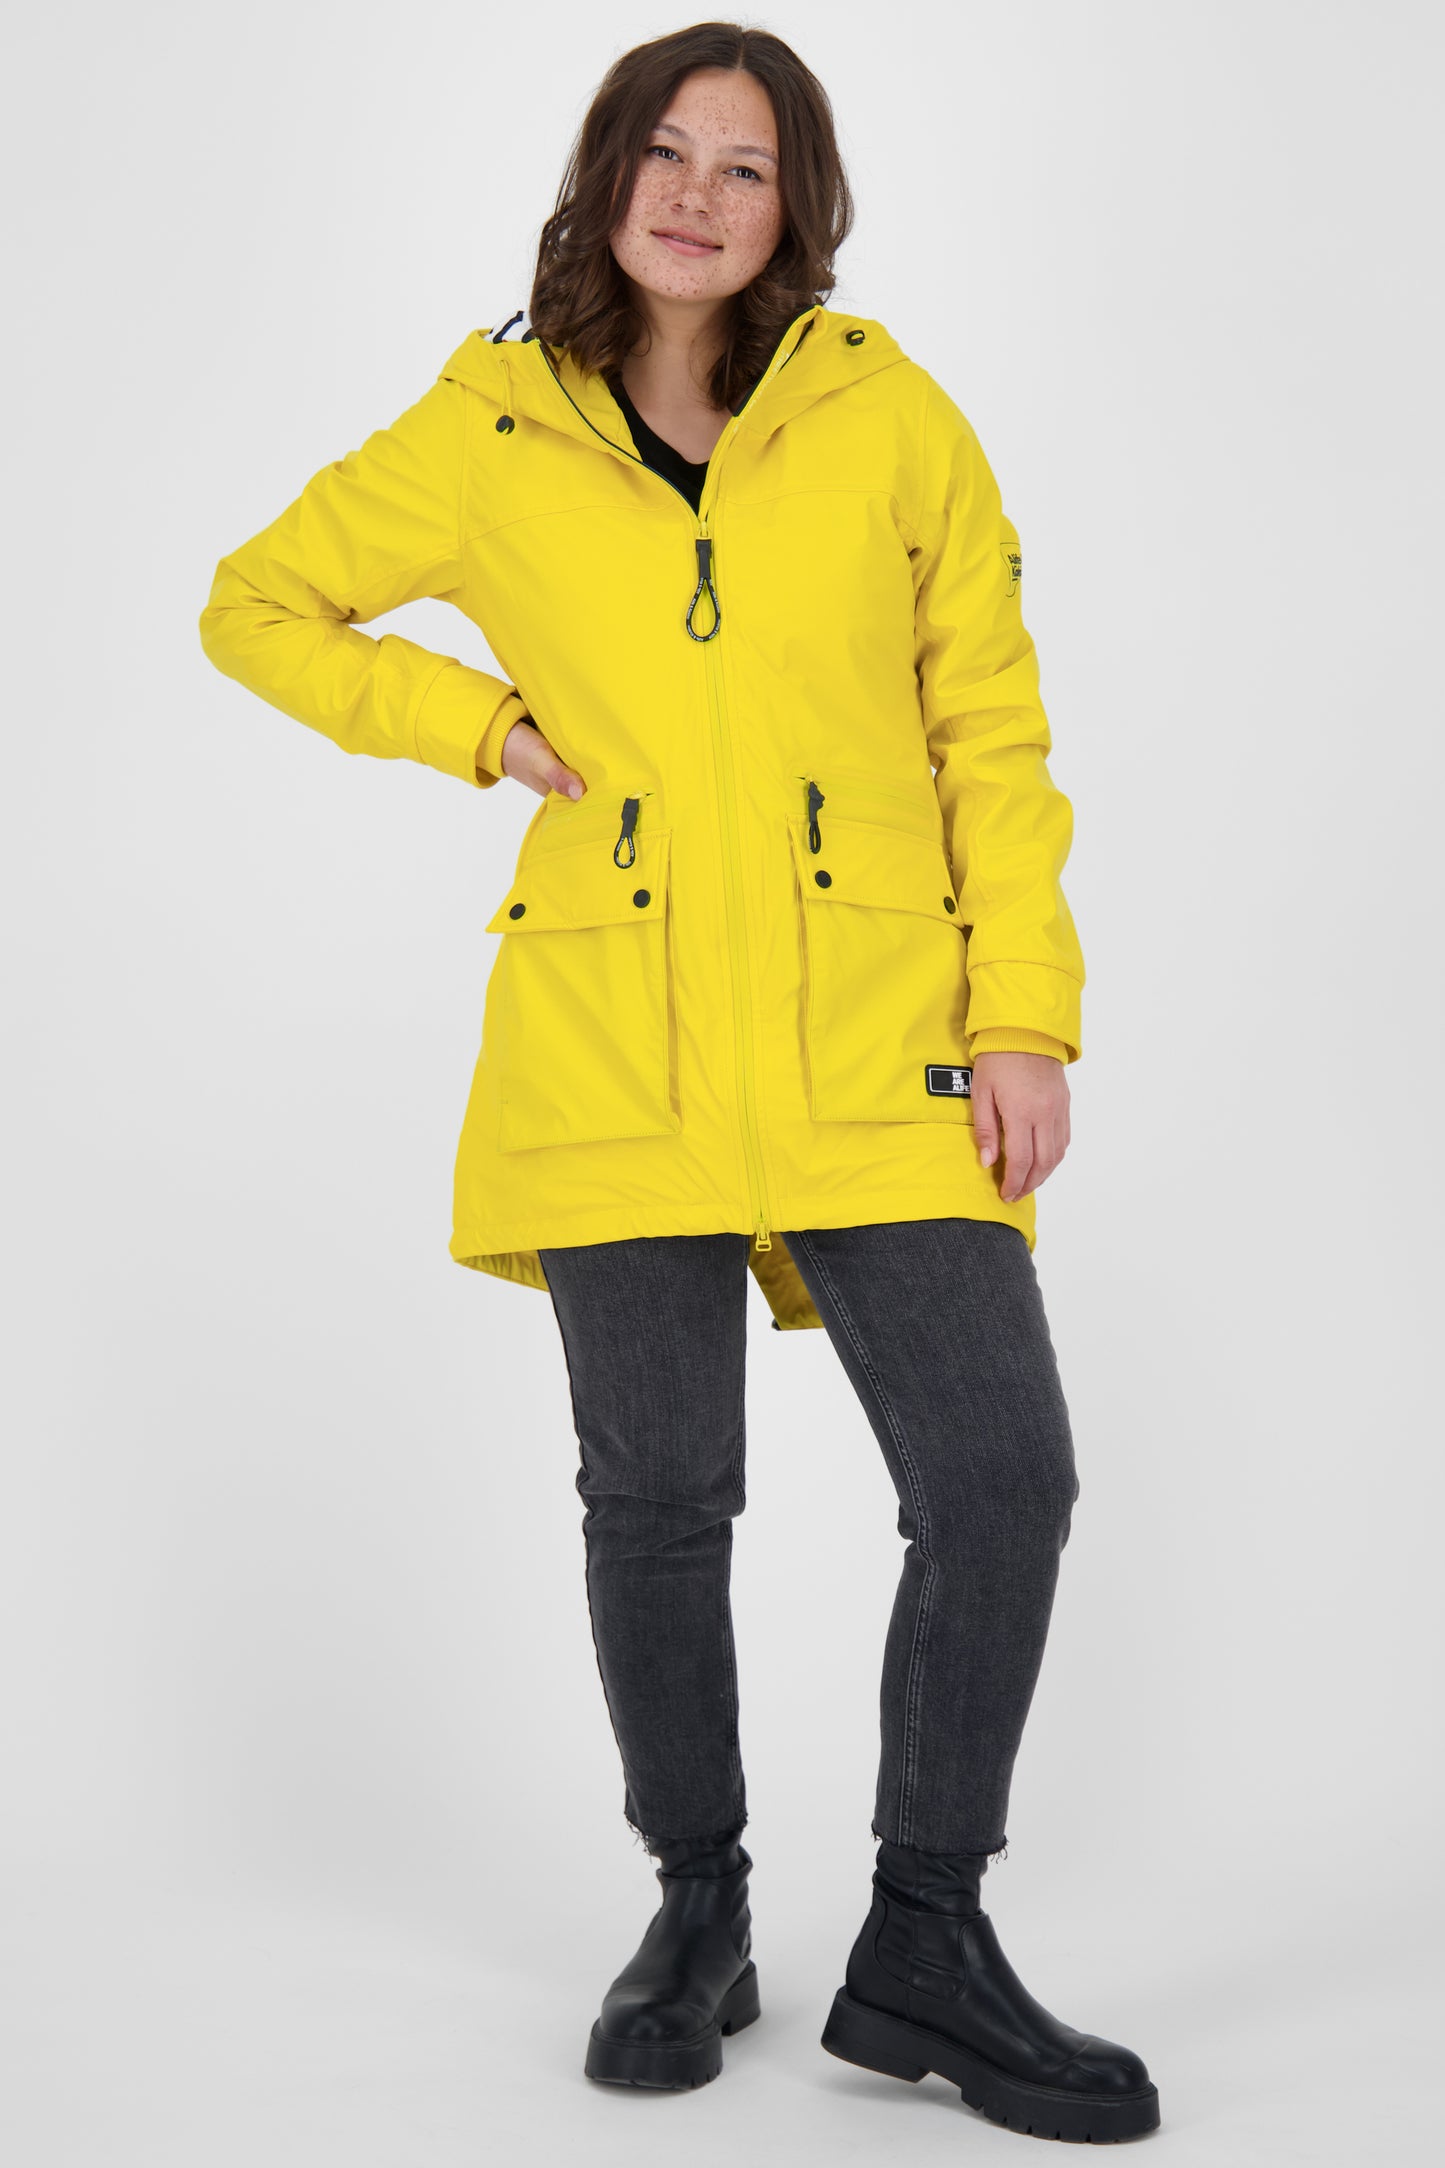 Regenmantel AudreyAK A - warm & modisch in bunten Farben Gelb